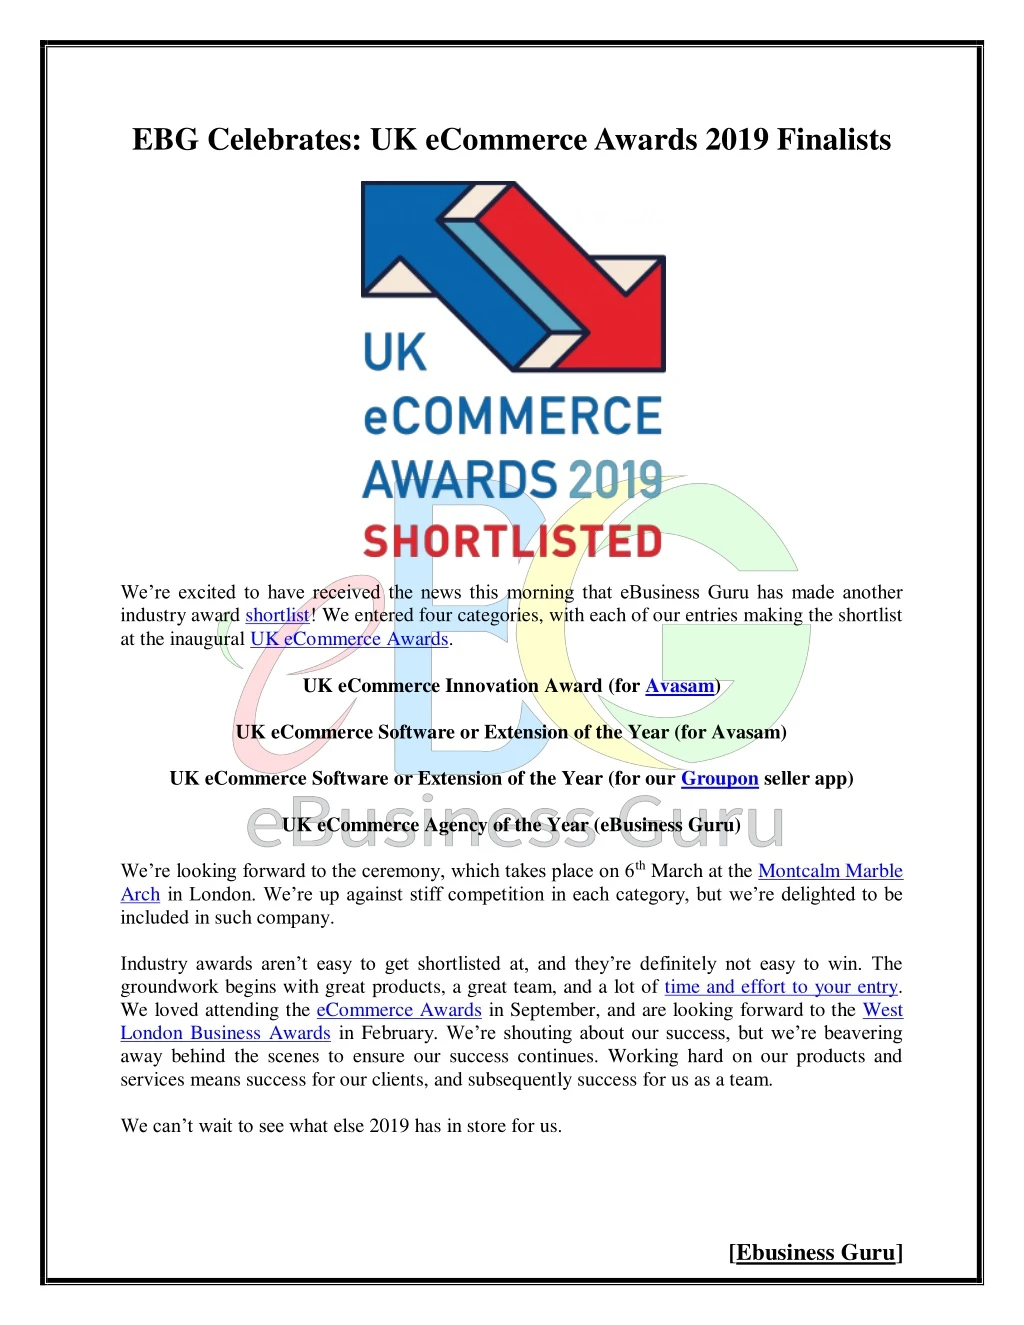 ebg celebrates uk ecommerce awards 2019 finalists